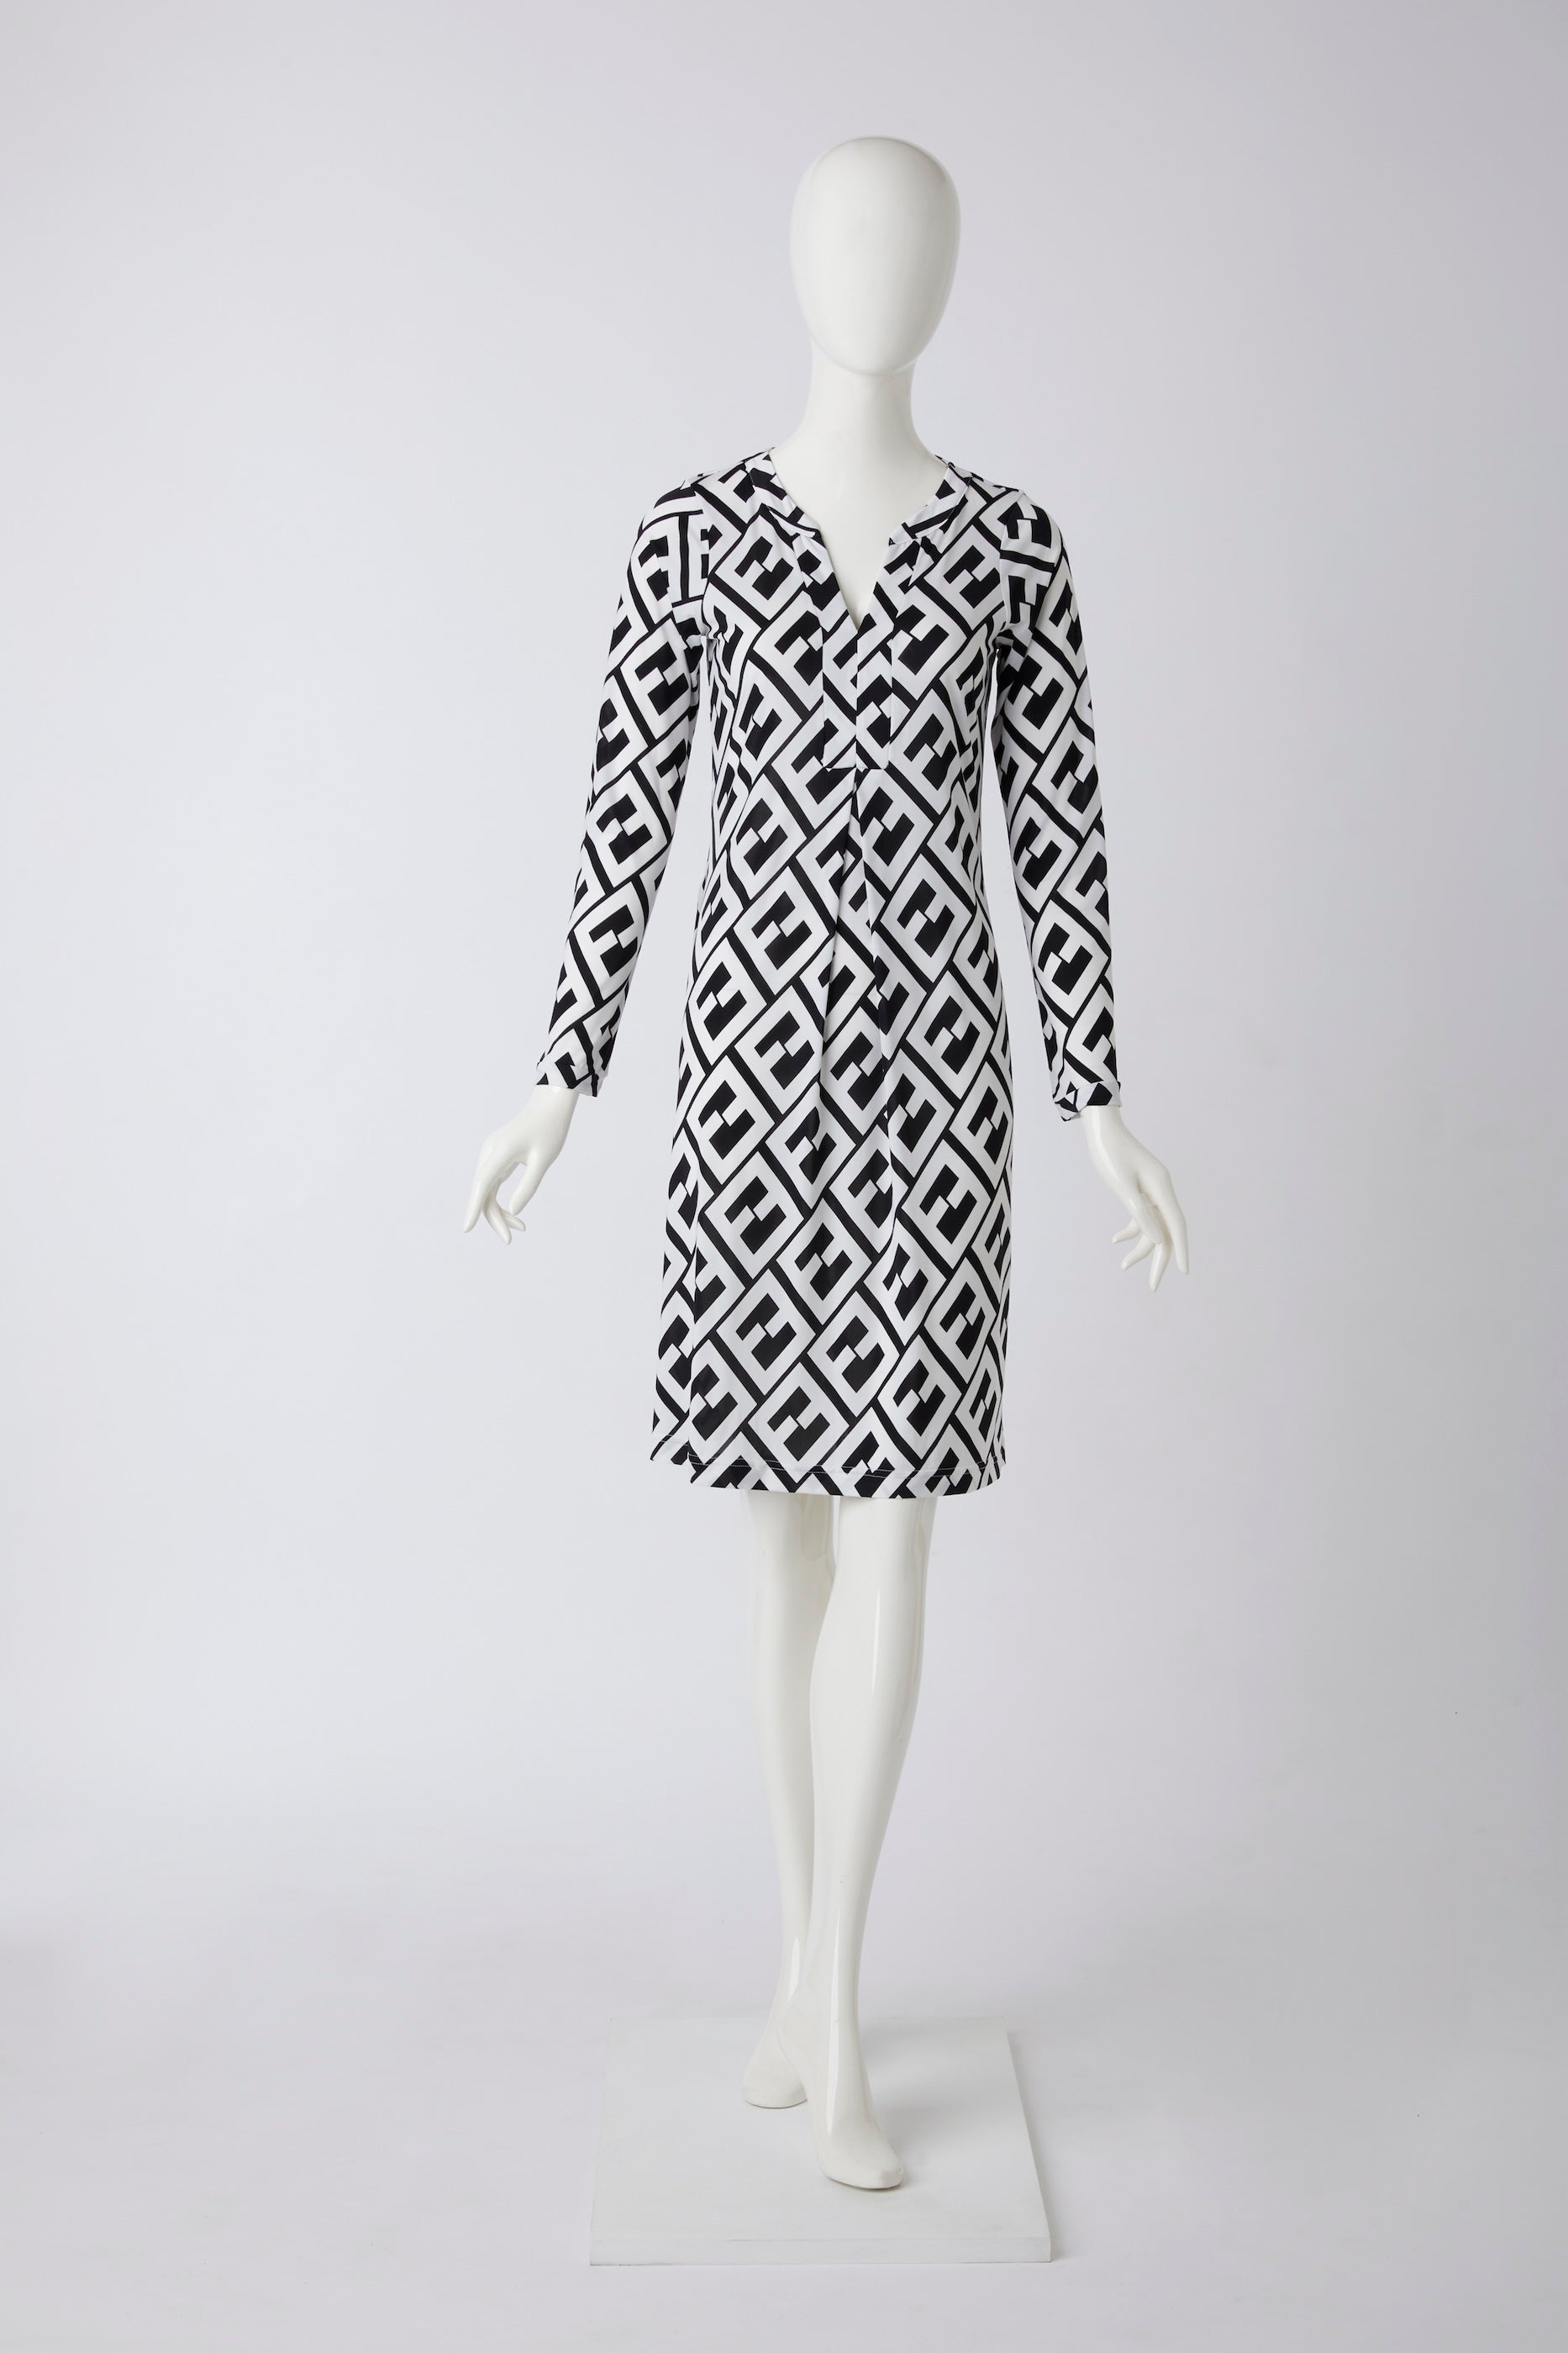 Kleid mit schwarz weißem Muster von dem Hamburger Modelabel stegmann mode